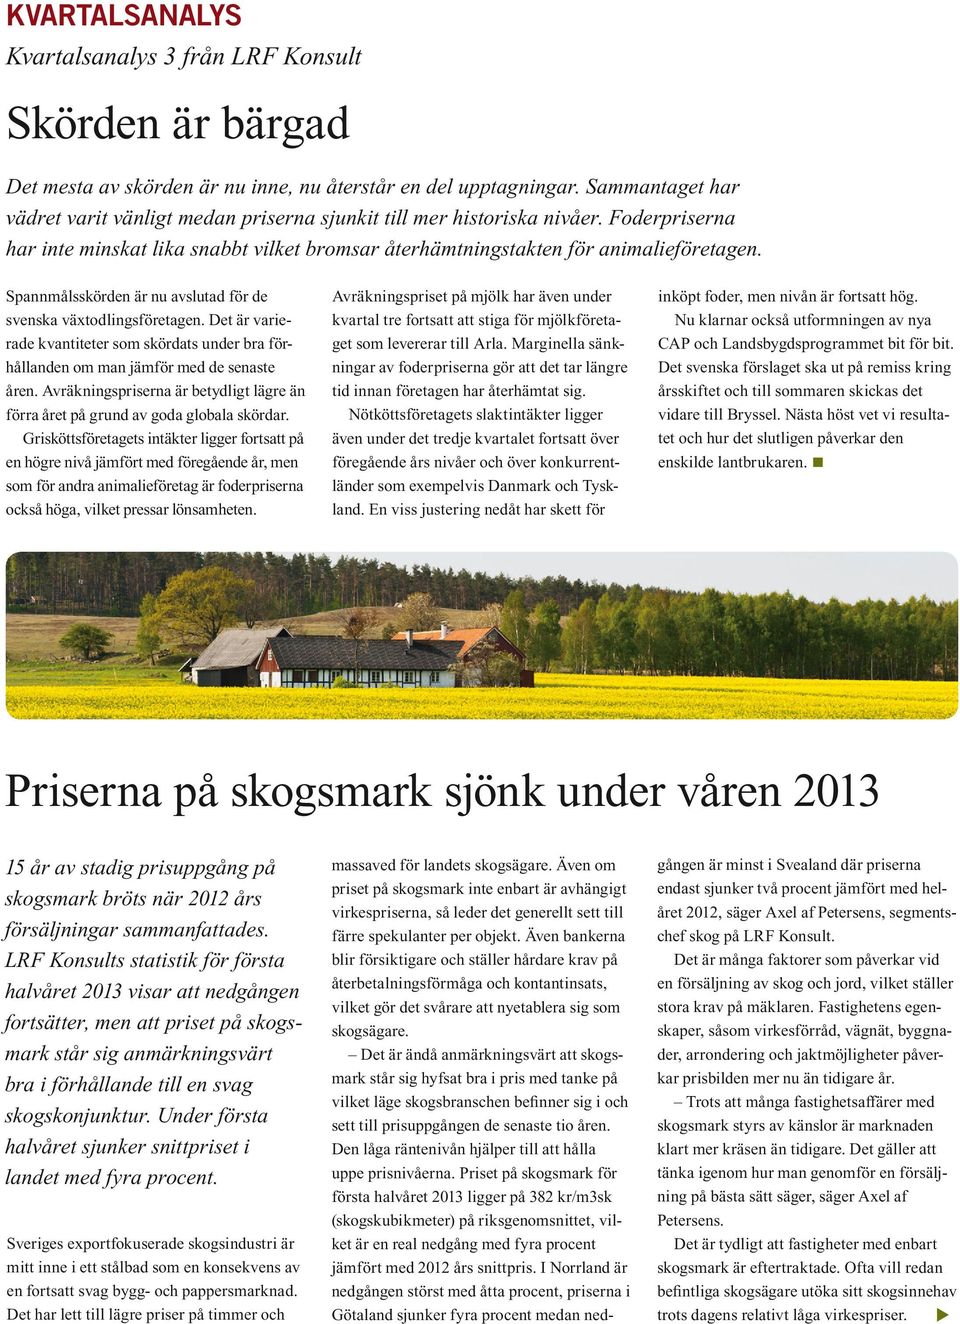 Spannmålsskörden är nu avslutad för de svenska växtodlingsföretagen. Det är varierade kvantiteter som skördats under bra förhållanden om man jämför med de senaste åren.